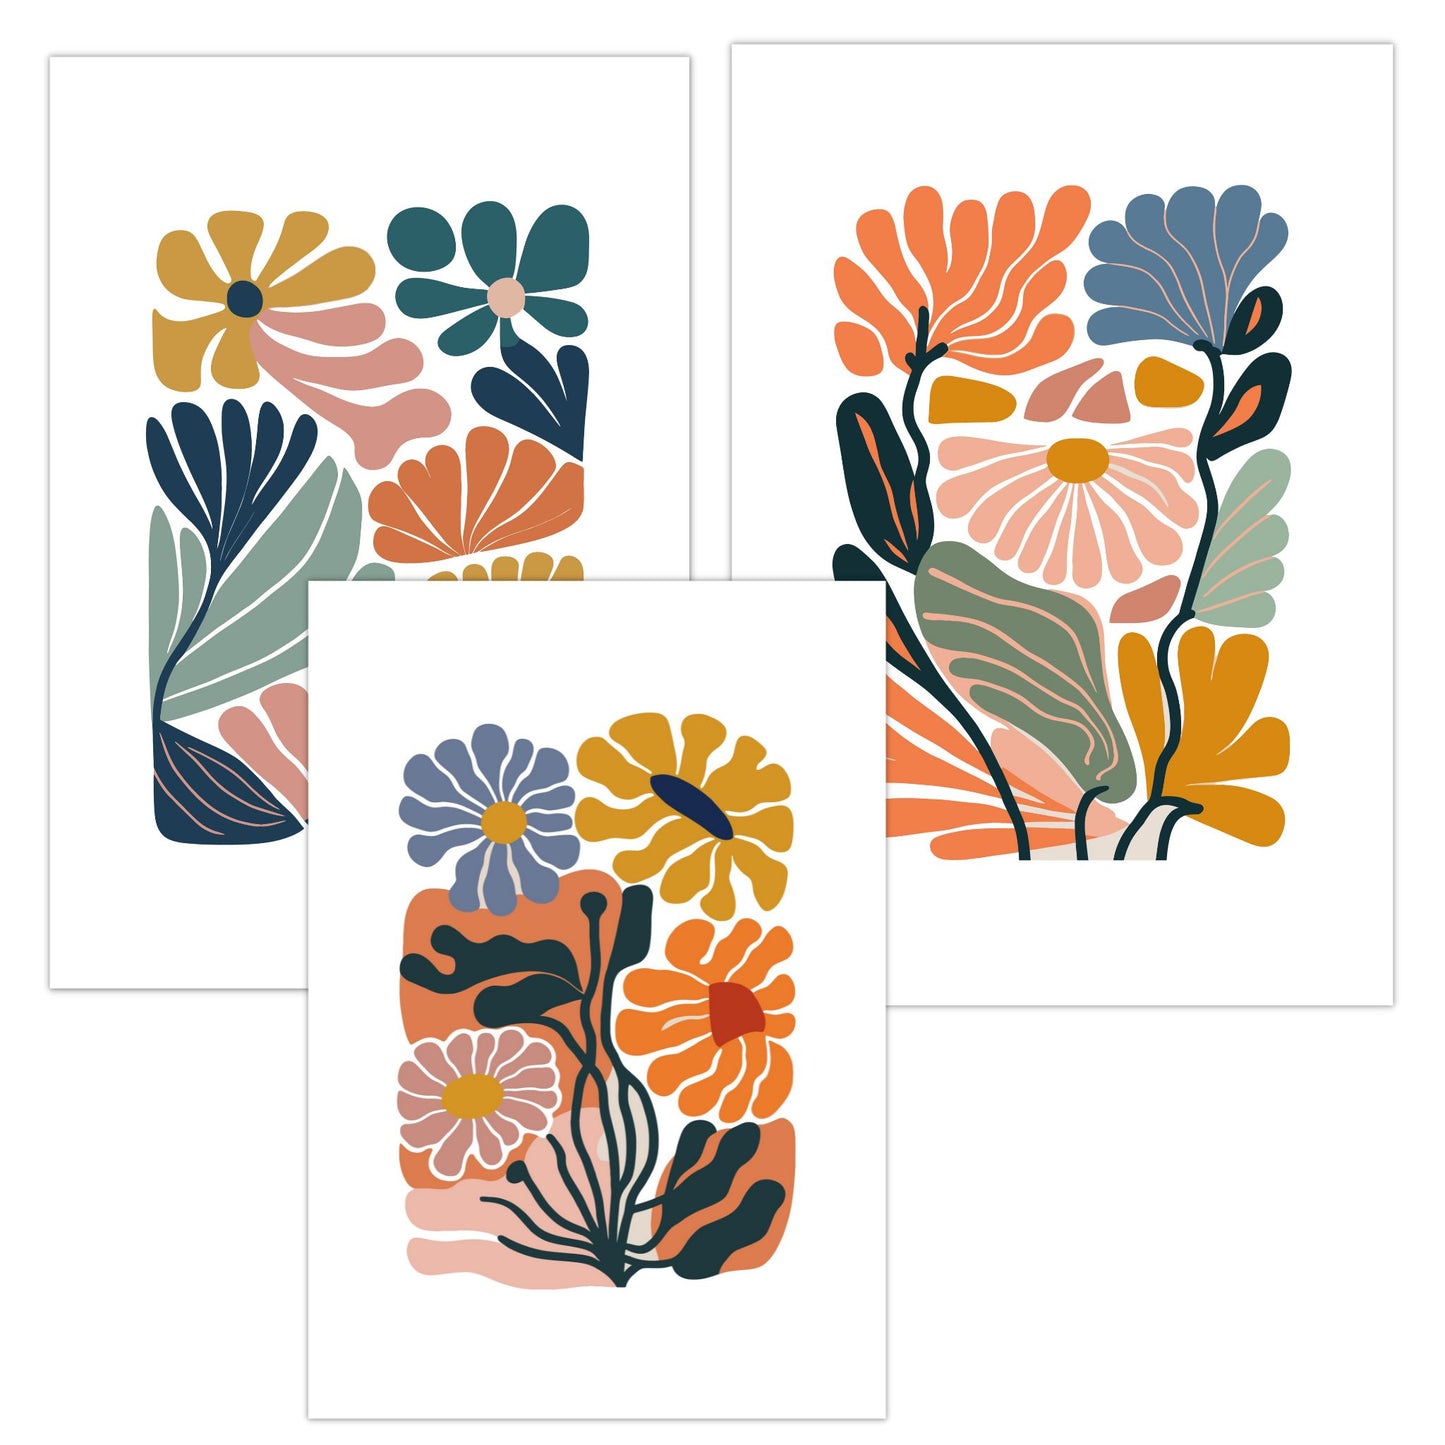 Denne serien består av 3 dekorative grafiske motiver i abstrakt botansik mønster. Fargepaletten går i grønn, gul, lys grønn, oransje, mellomblå, rust, gammelrosa og hvit bakgrunn. 